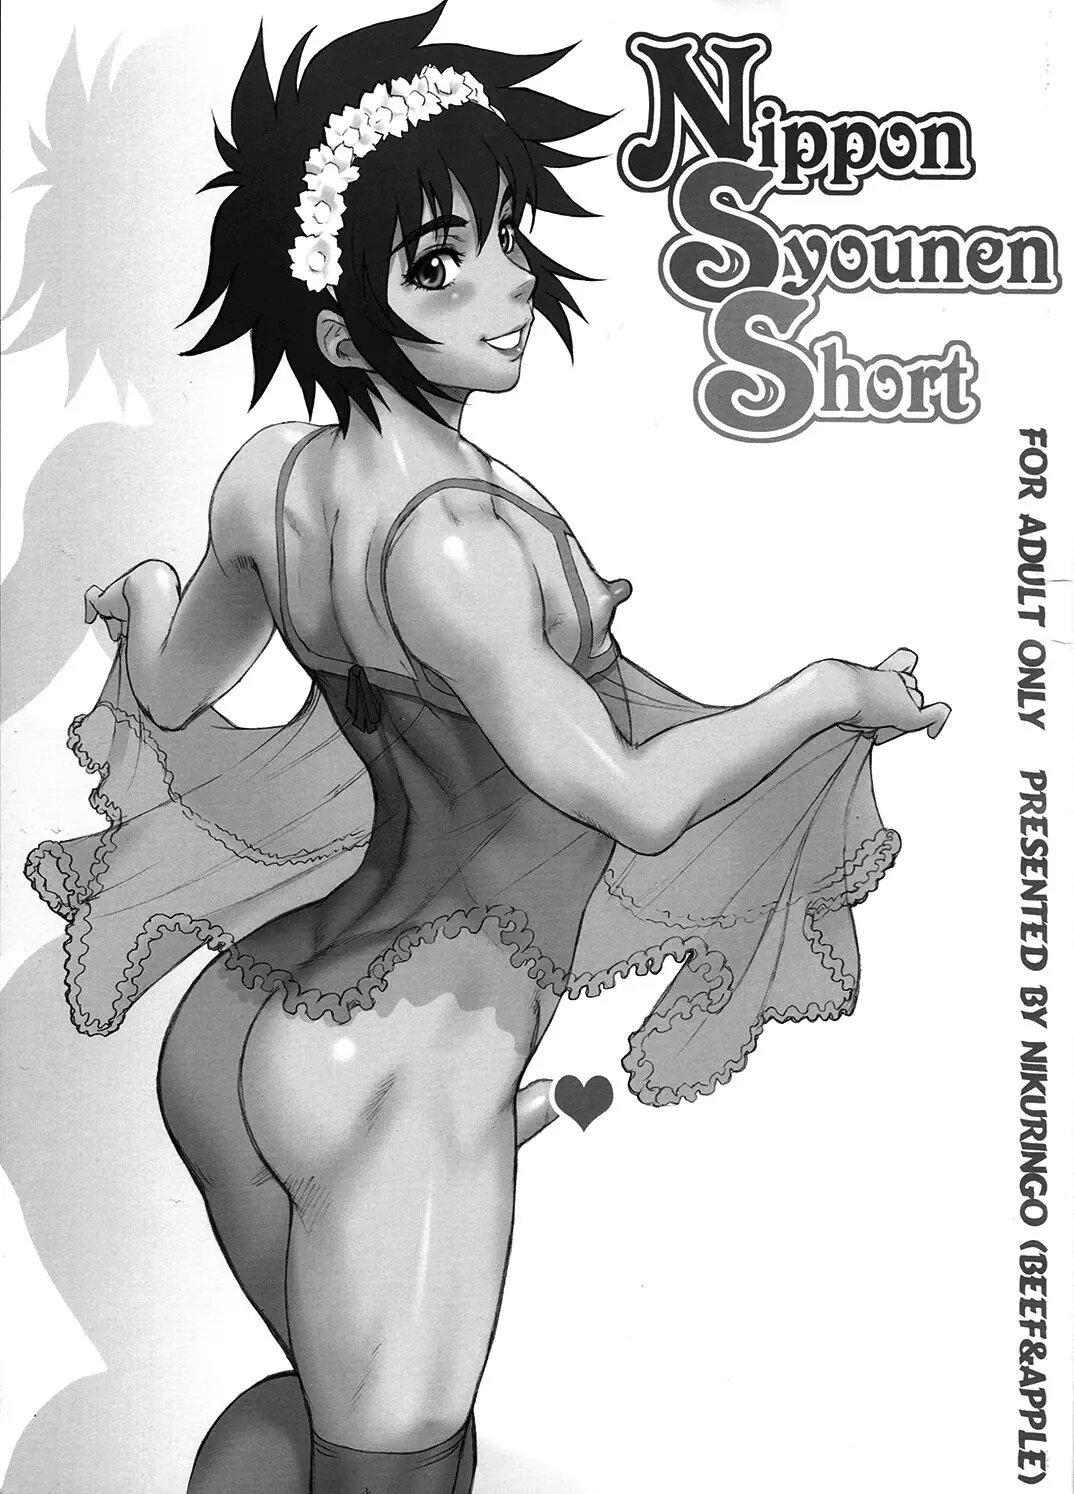 Nippon Syounen Short - 0